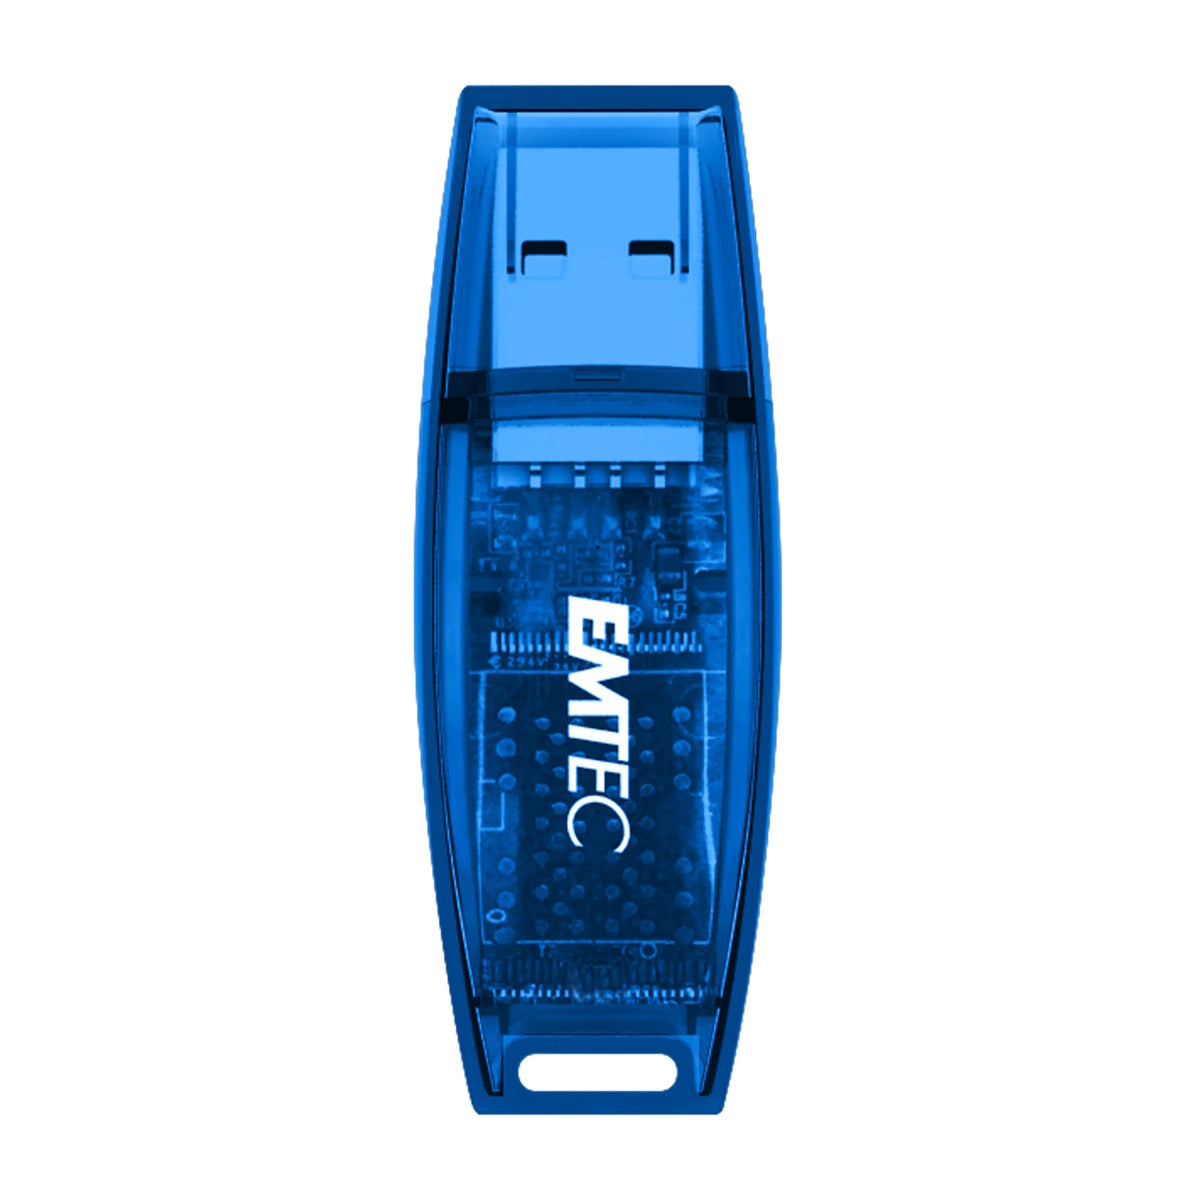 Emtec - Clé USB C410 2.0 (32 Go)